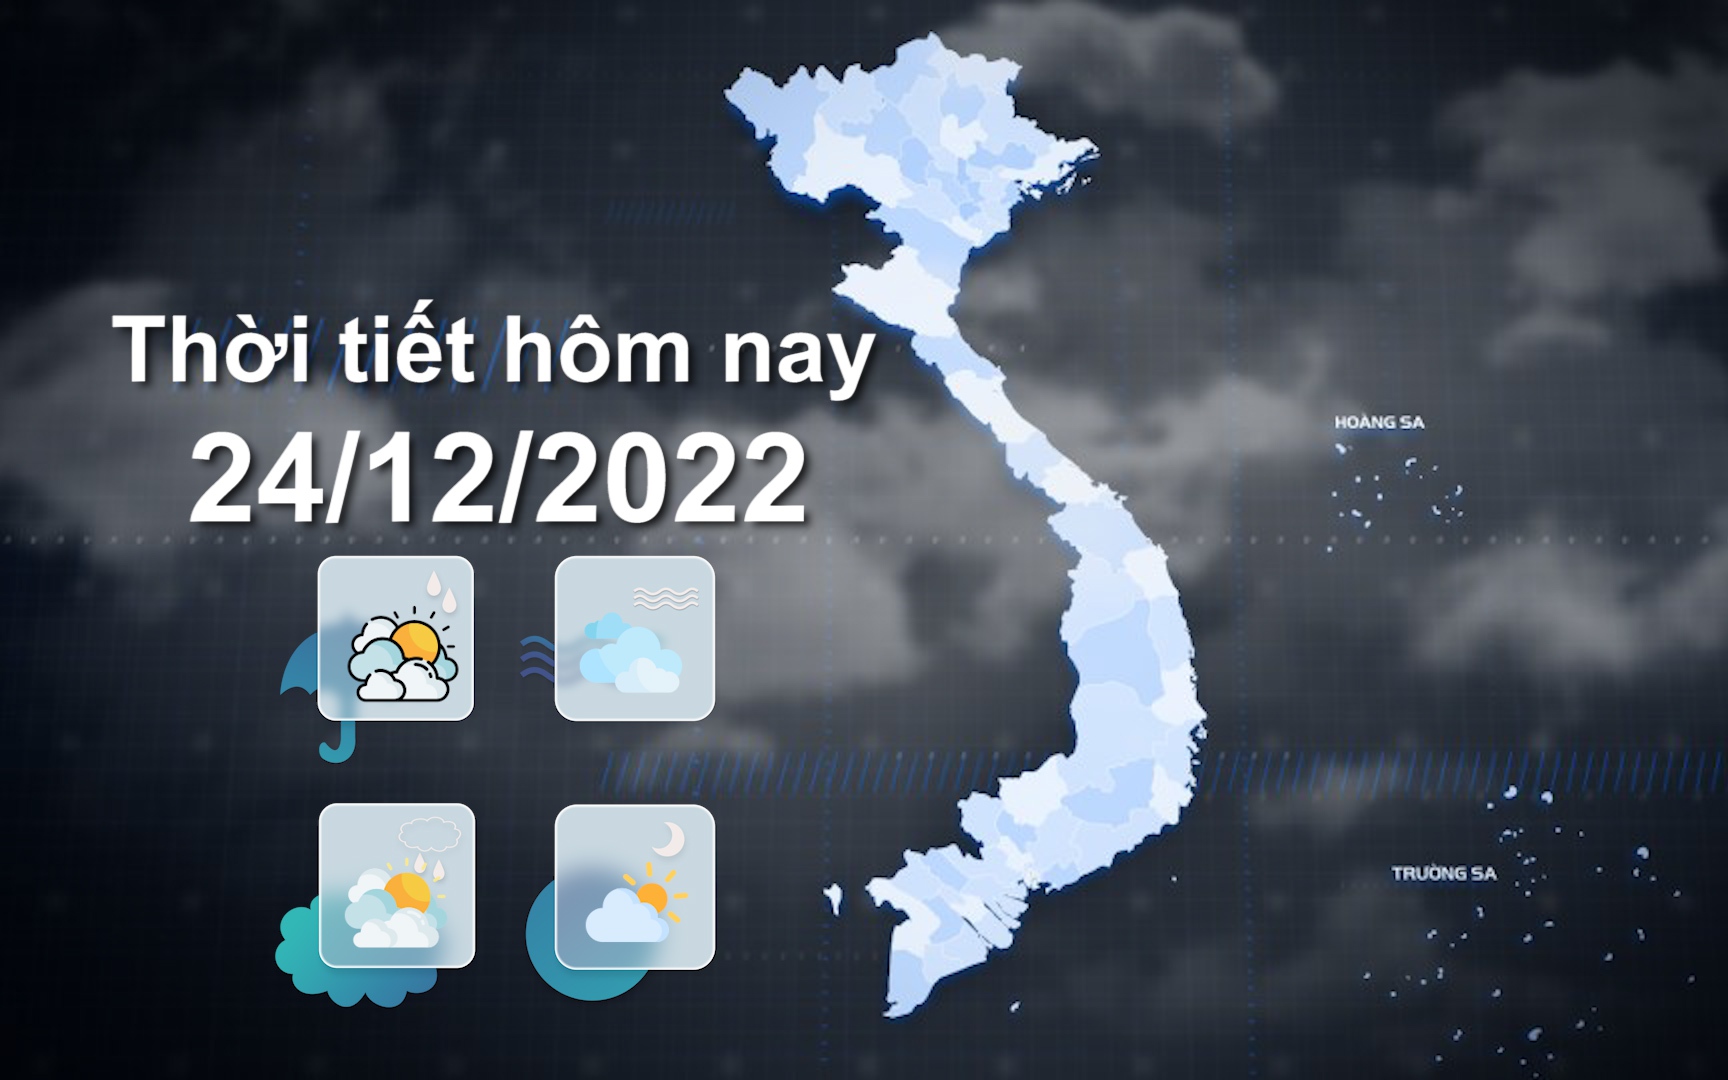 Thời tiết hôm nay 24/12/2022: Bắc Bộ trời rét, Bắc Trung Bộ trời lạnh